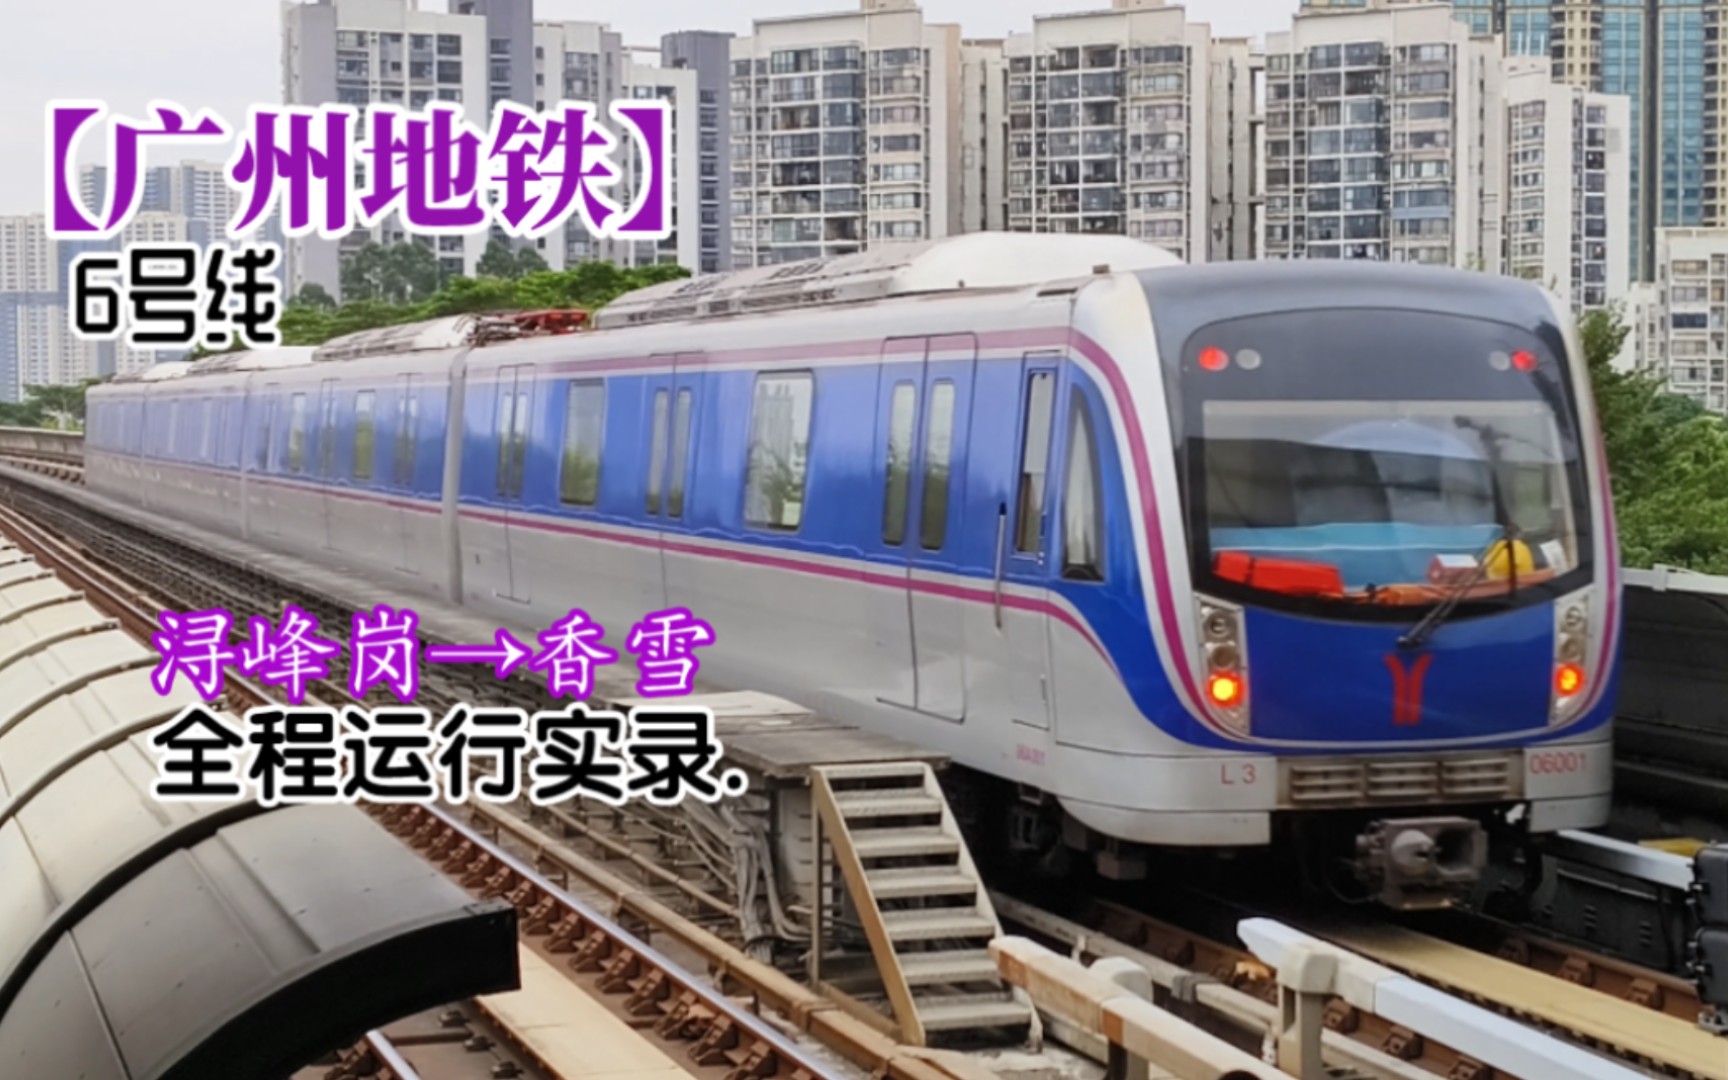 【广州地铁】六号线 香雪方向 全程运行实录